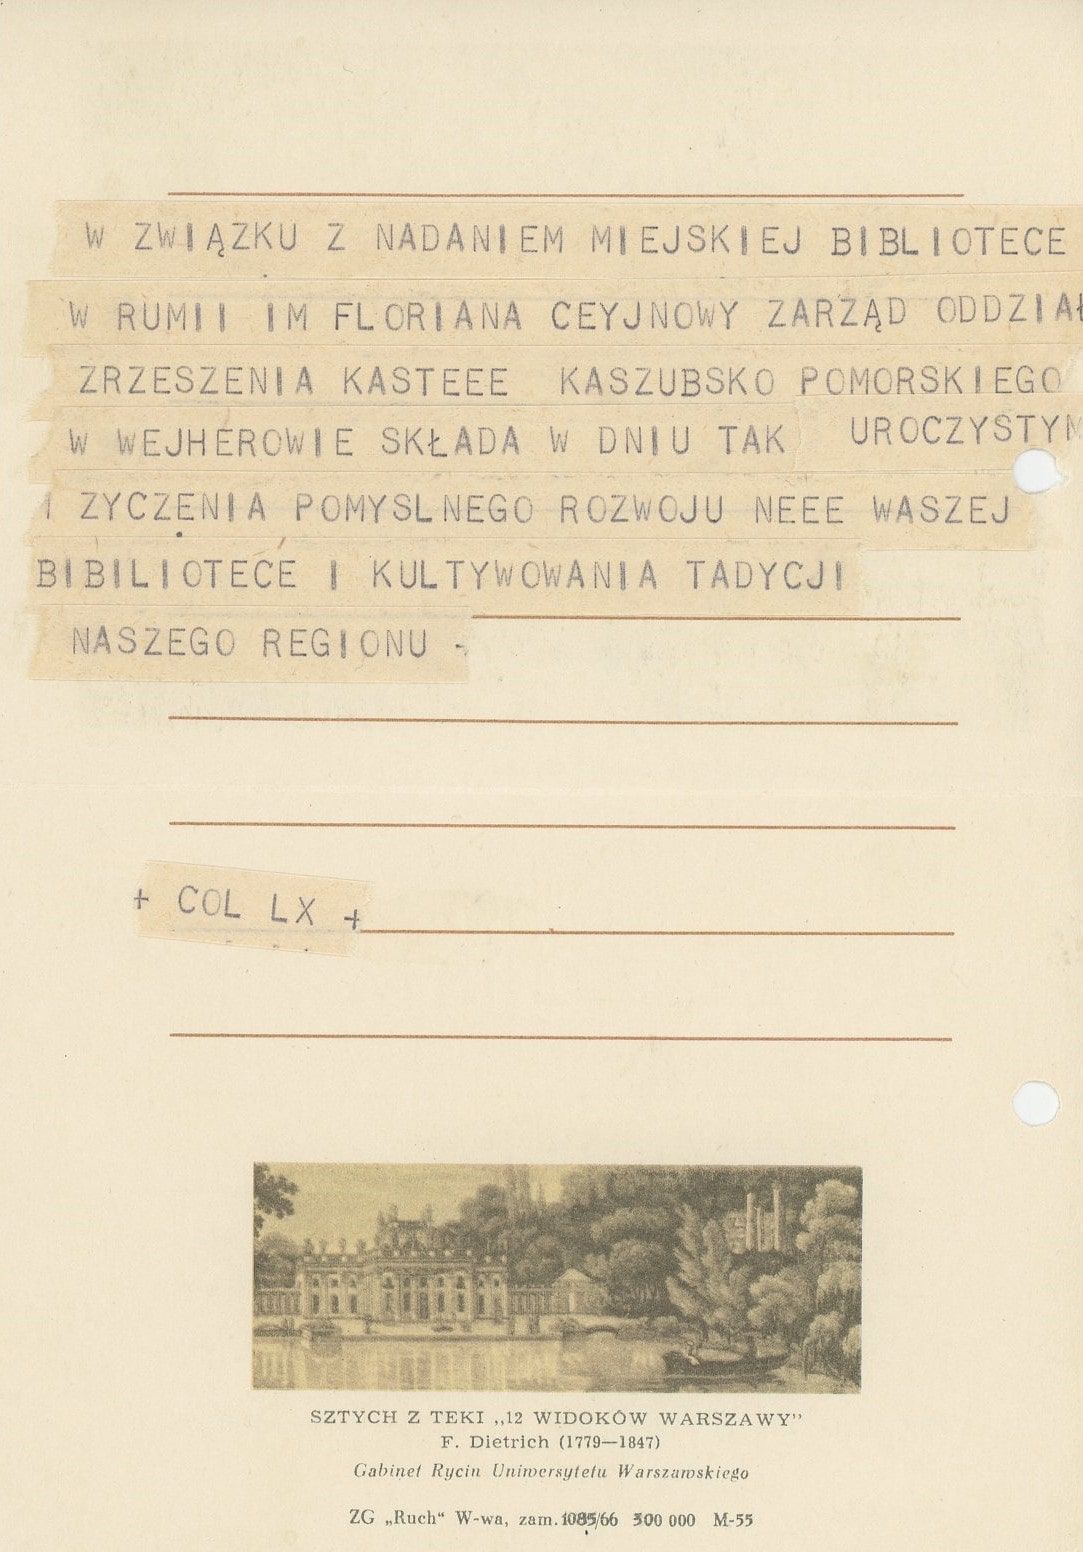 Telegram wysłany z okazji nadania bibliotece imienia Floriana Ceynowy, ze zbiorów MBP Rumia